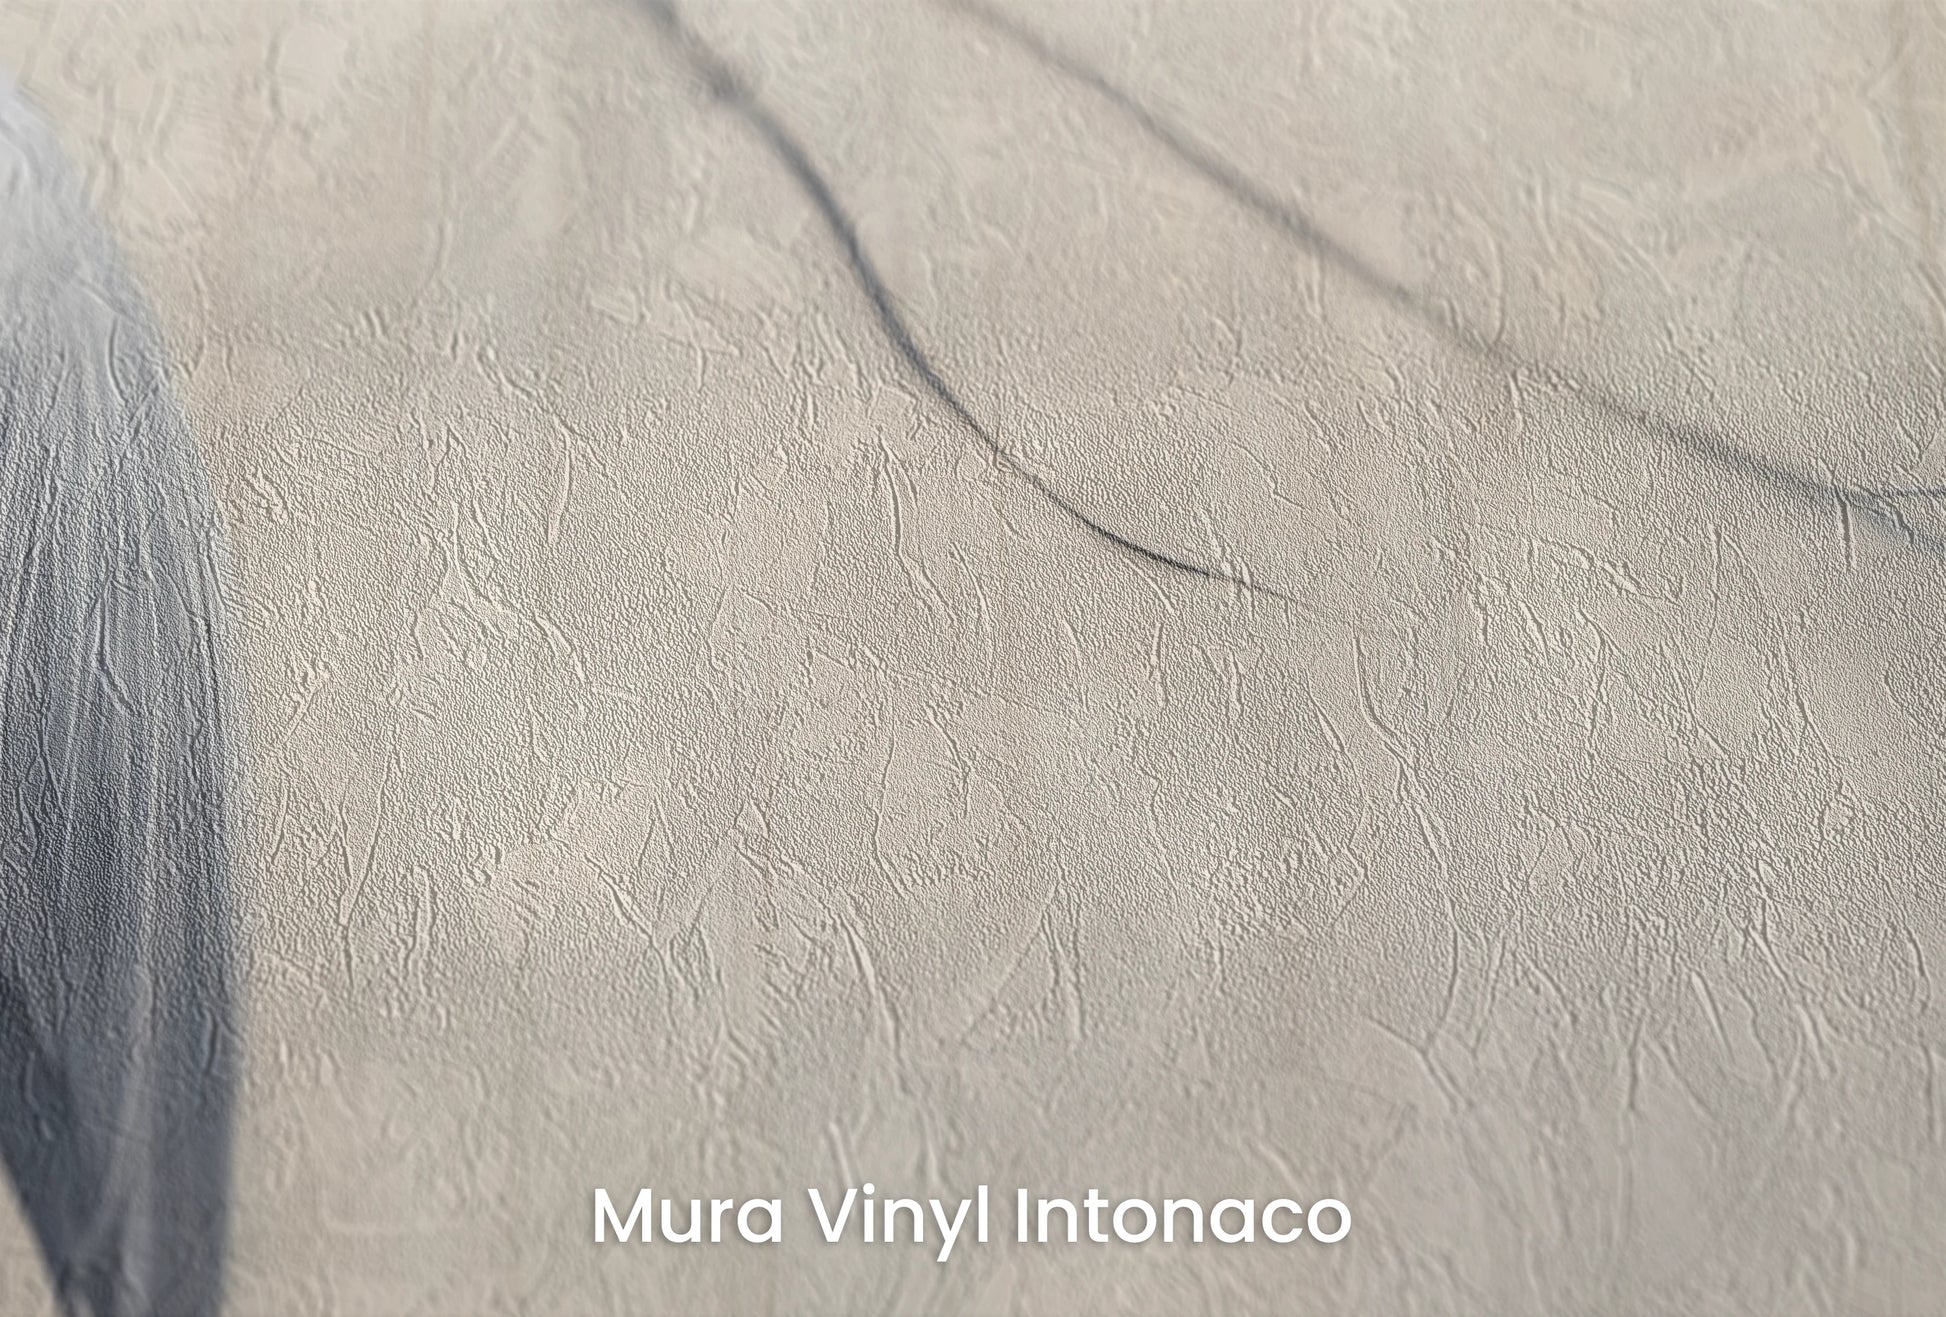 Zbliżenie na artystyczną fototapetę o nazwie Heron's Realm na podłożu Mura Vinyl Intonaco - struktura tartego tynku.